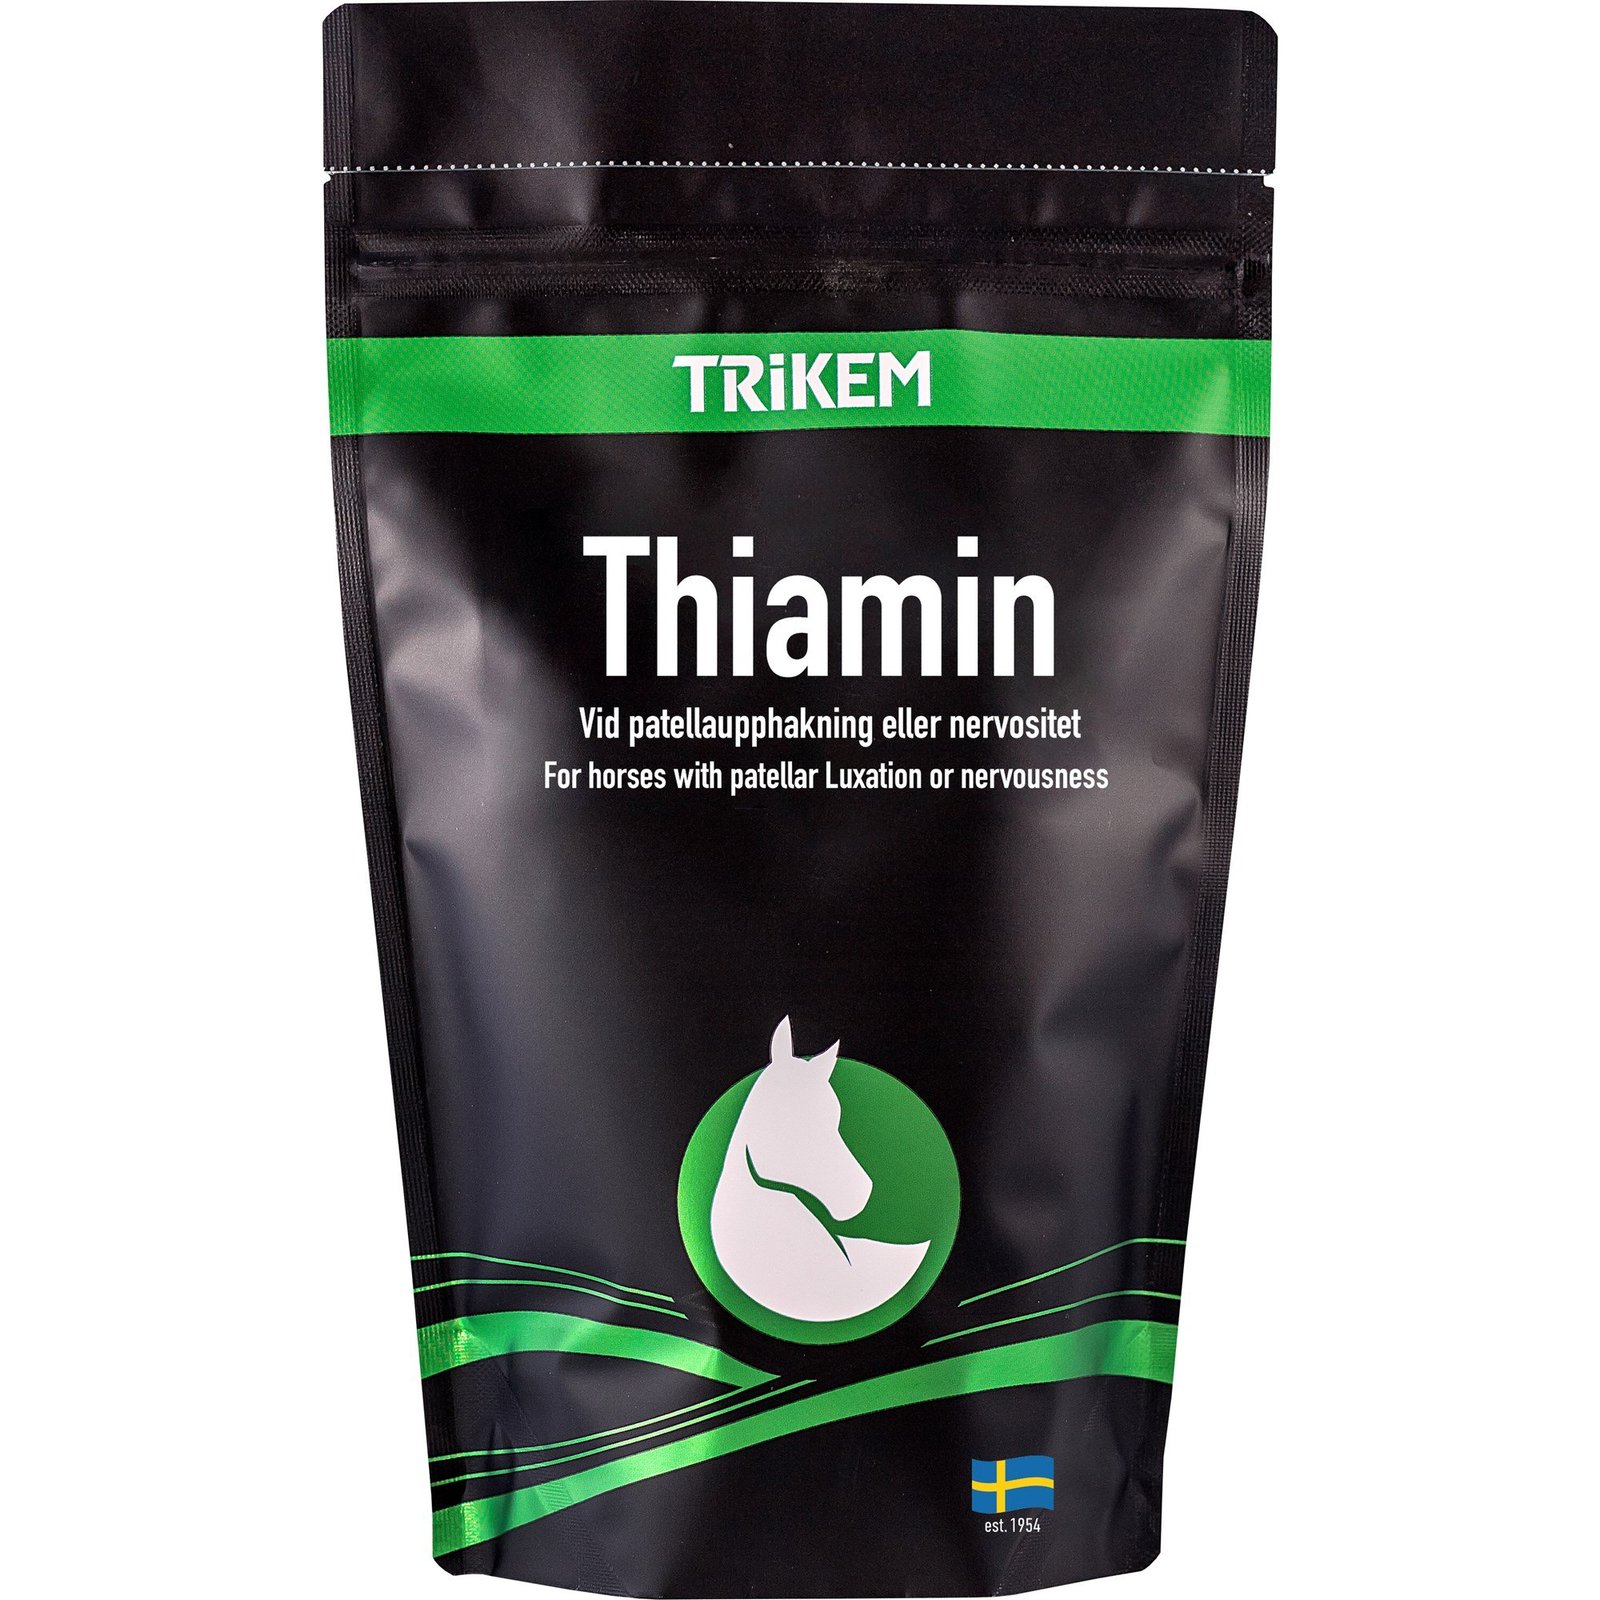 Trikem Thiamin 500 g